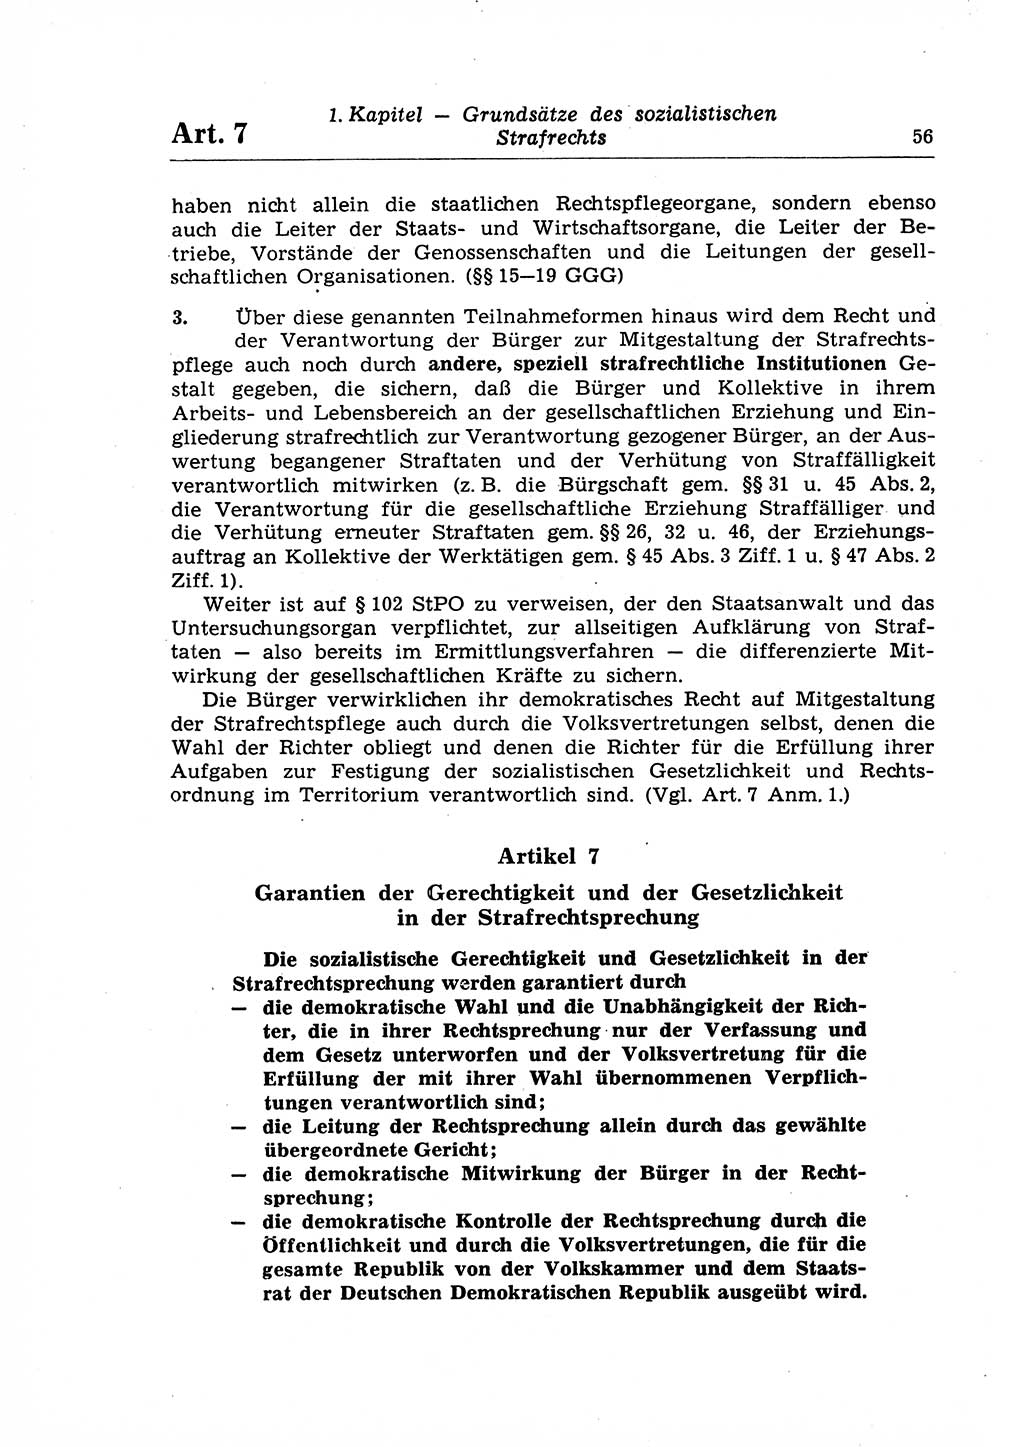 Strafrecht der Deutschen Demokratischen Republik (DDR), Lehrkommentar zum Strafgesetzbuch (StGB), Allgemeiner Teil 1969, Seite 56 (Strafr. DDR Lehrkomm. StGB AT 1969, S. 56)